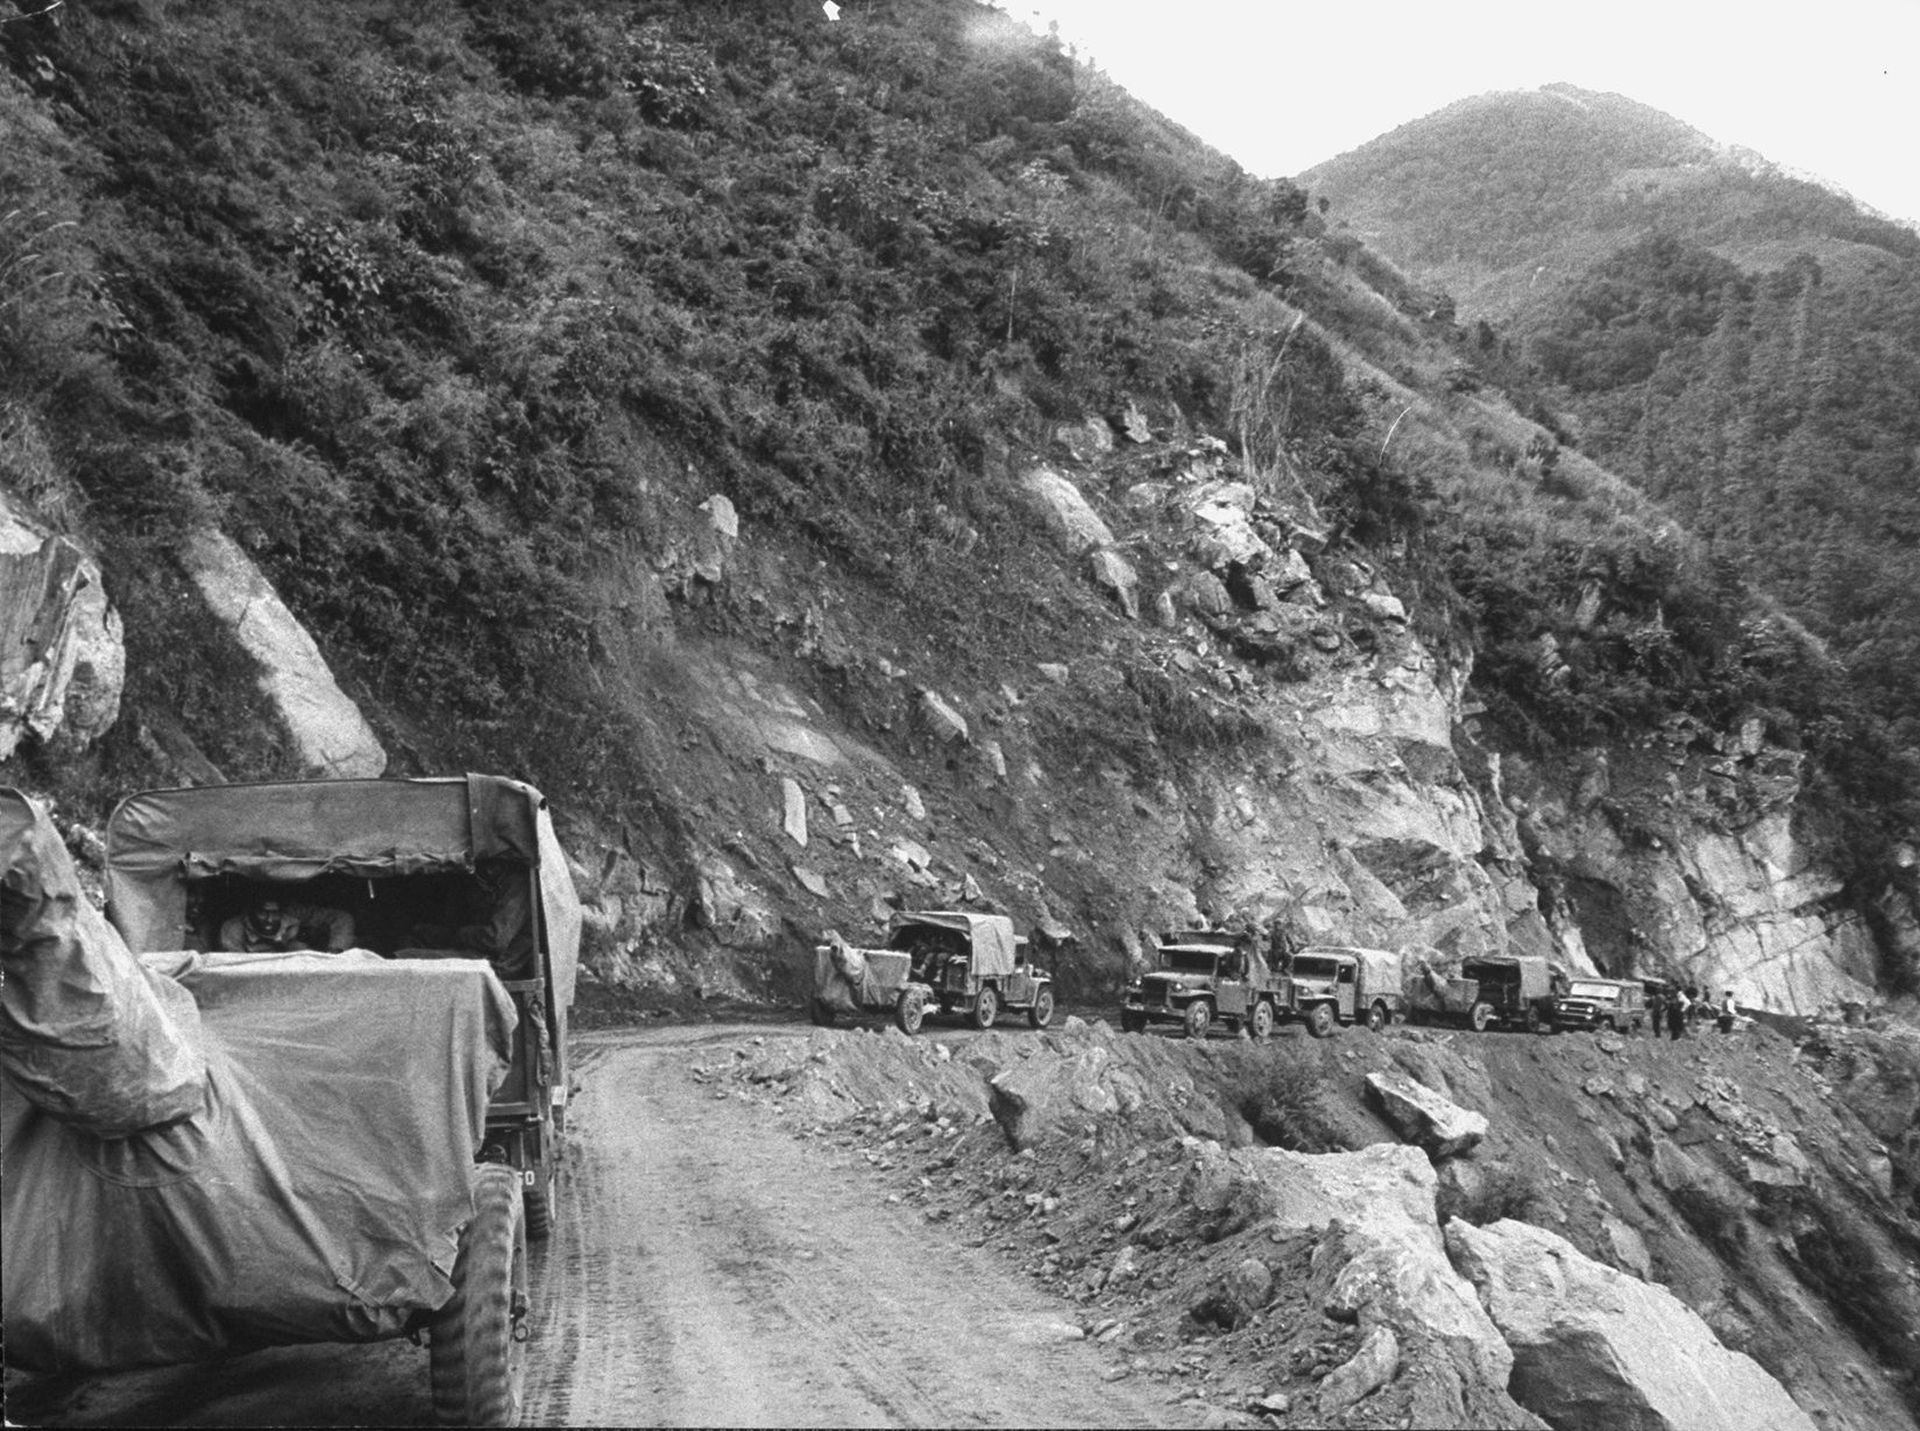 1962年中印战争之前，中国曾多次建议和谈被拒，期间打通藏南但主动撤回。图为当年的中印战争时印度运送军火的车队行进在边境地区的山路上。（VCG）